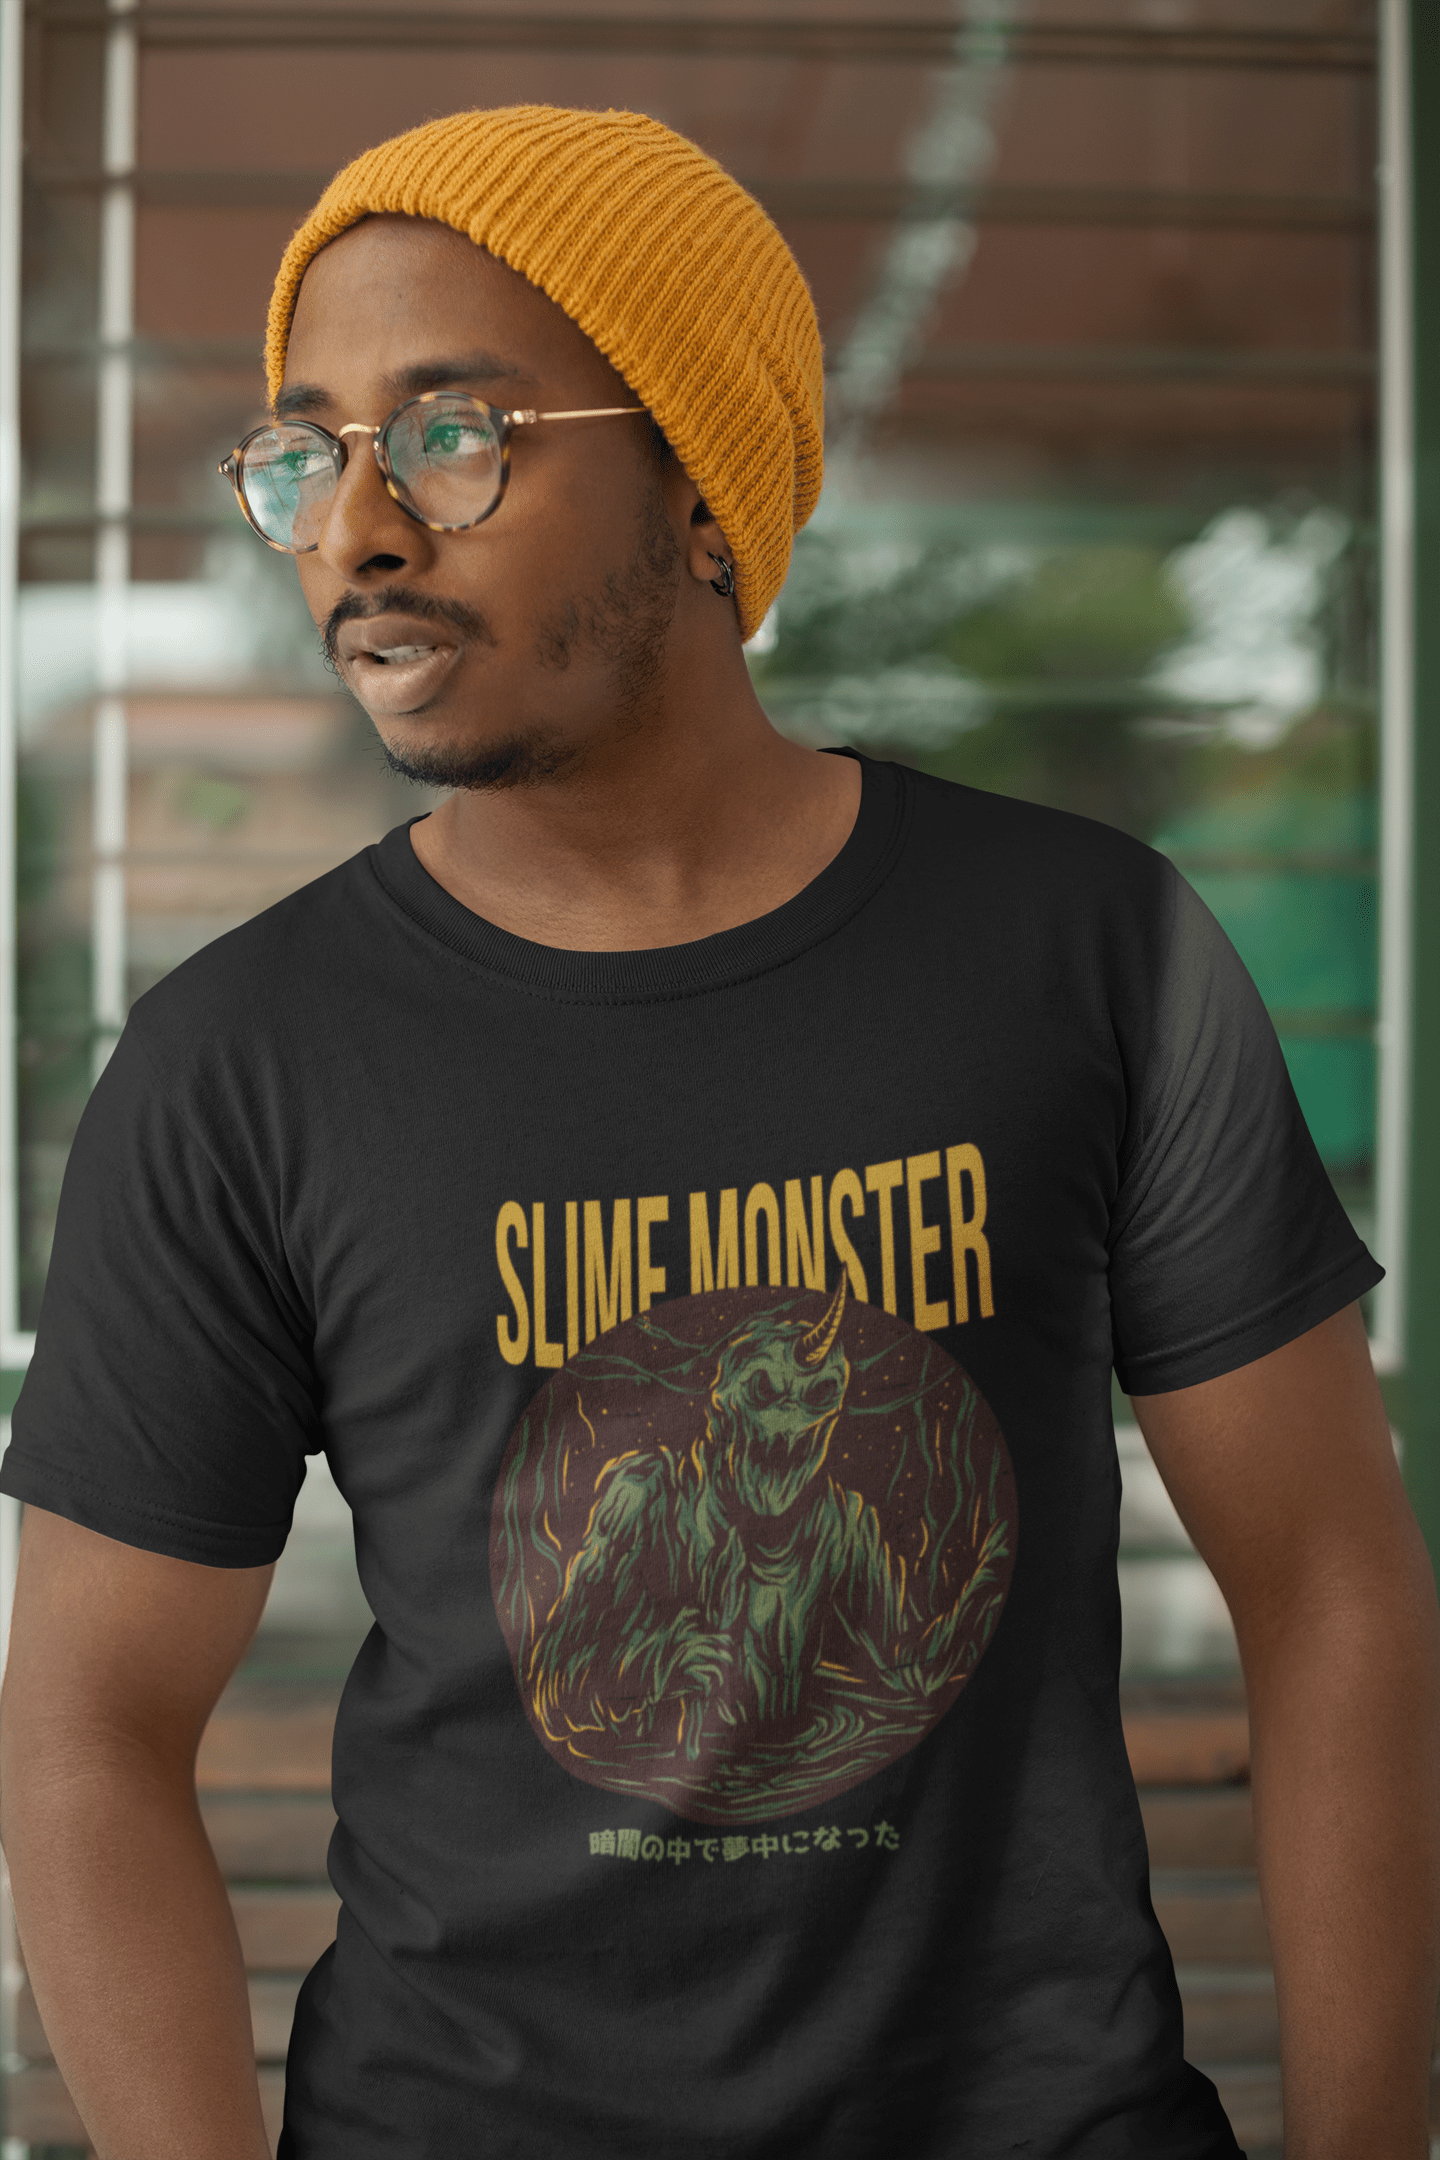 ULTRABASIC Men's Novelty T-Shirt Slime Monster - Scary Short Sleeve Tee Shirt